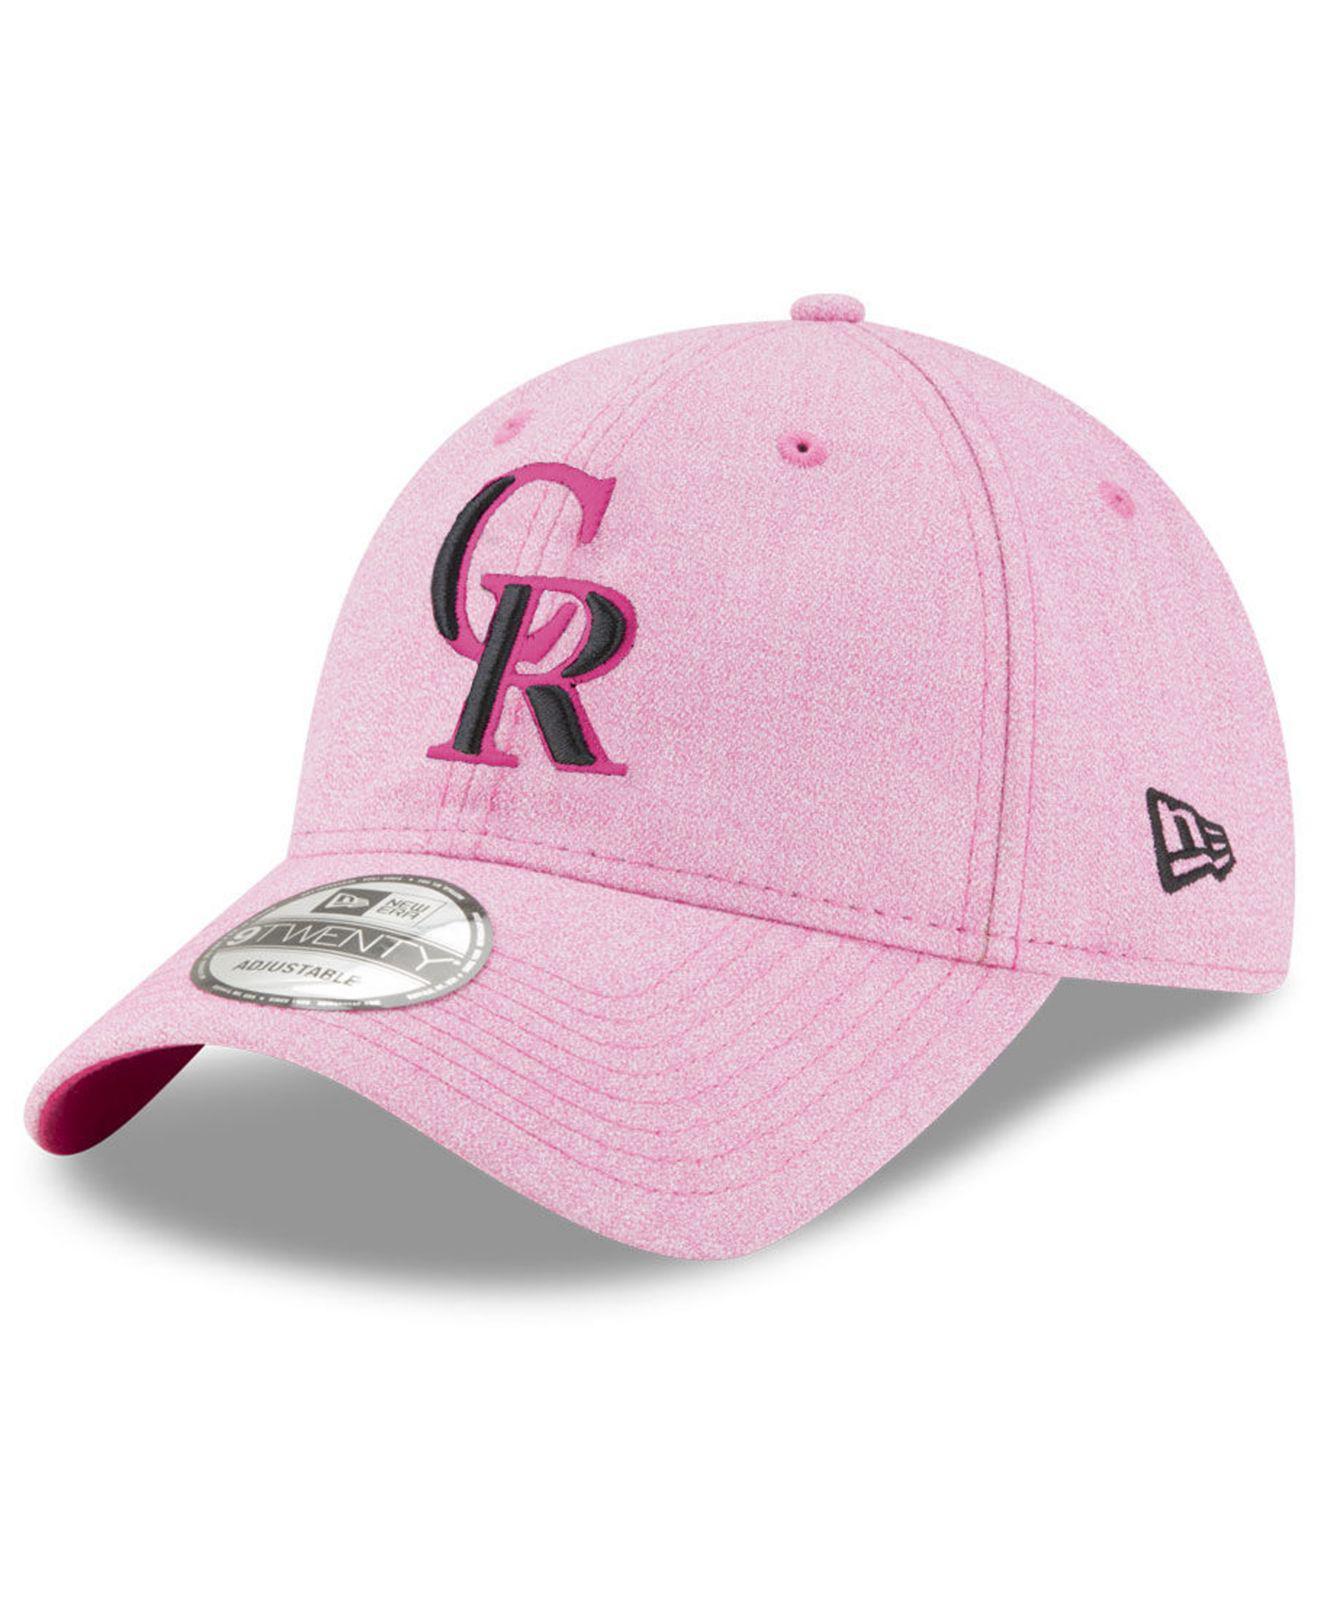 Pink Colorado Logo - Lyst - Ktz Colorado Rockies Mothers Day 9twenty Cap in Pink